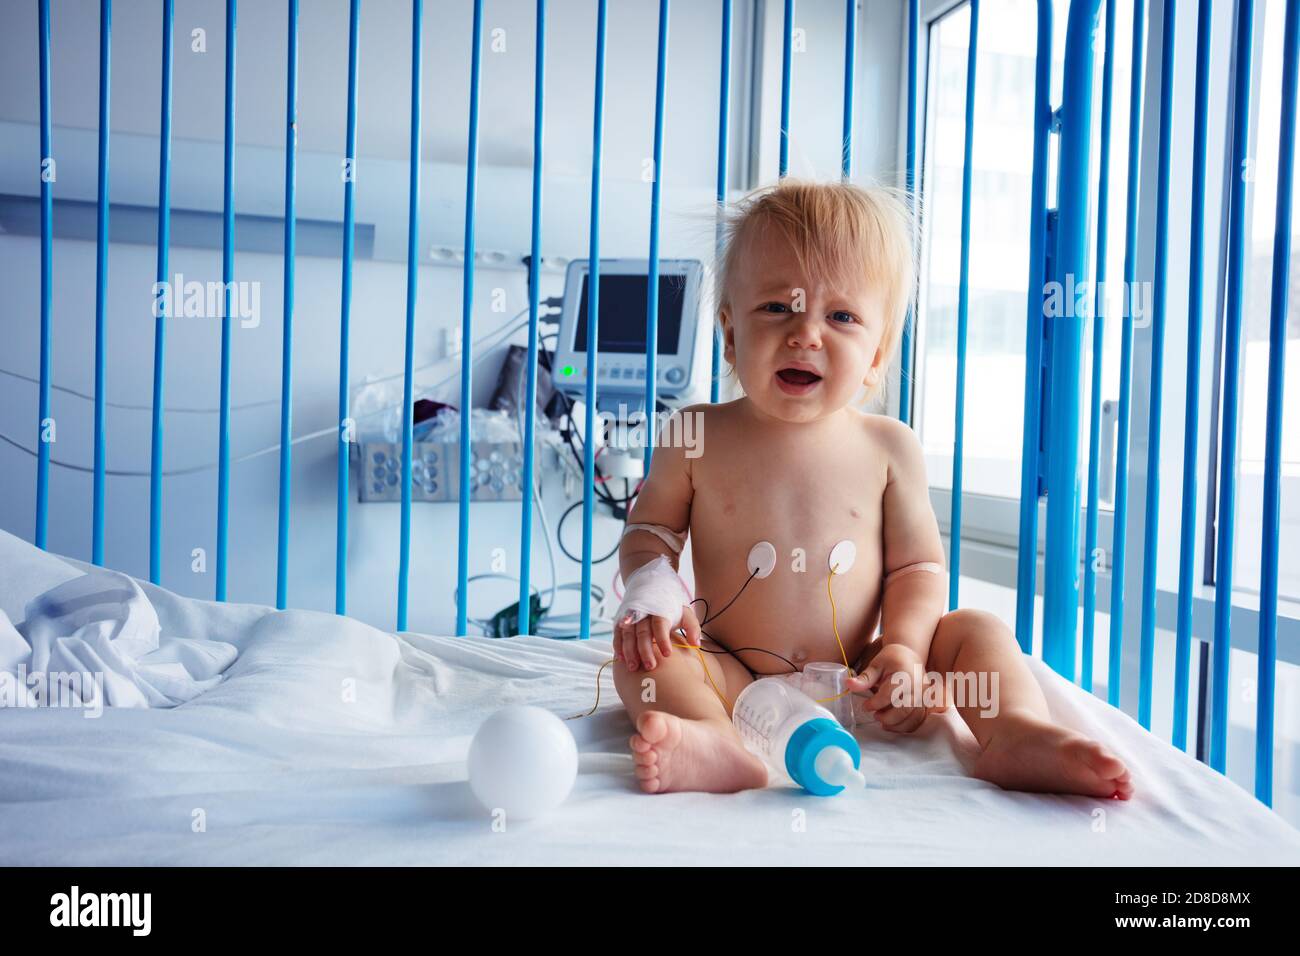 Un piccolo bambino di un anno si siede nel letto dell'ospedale e. piangi con il catetere in mano Foto Stock